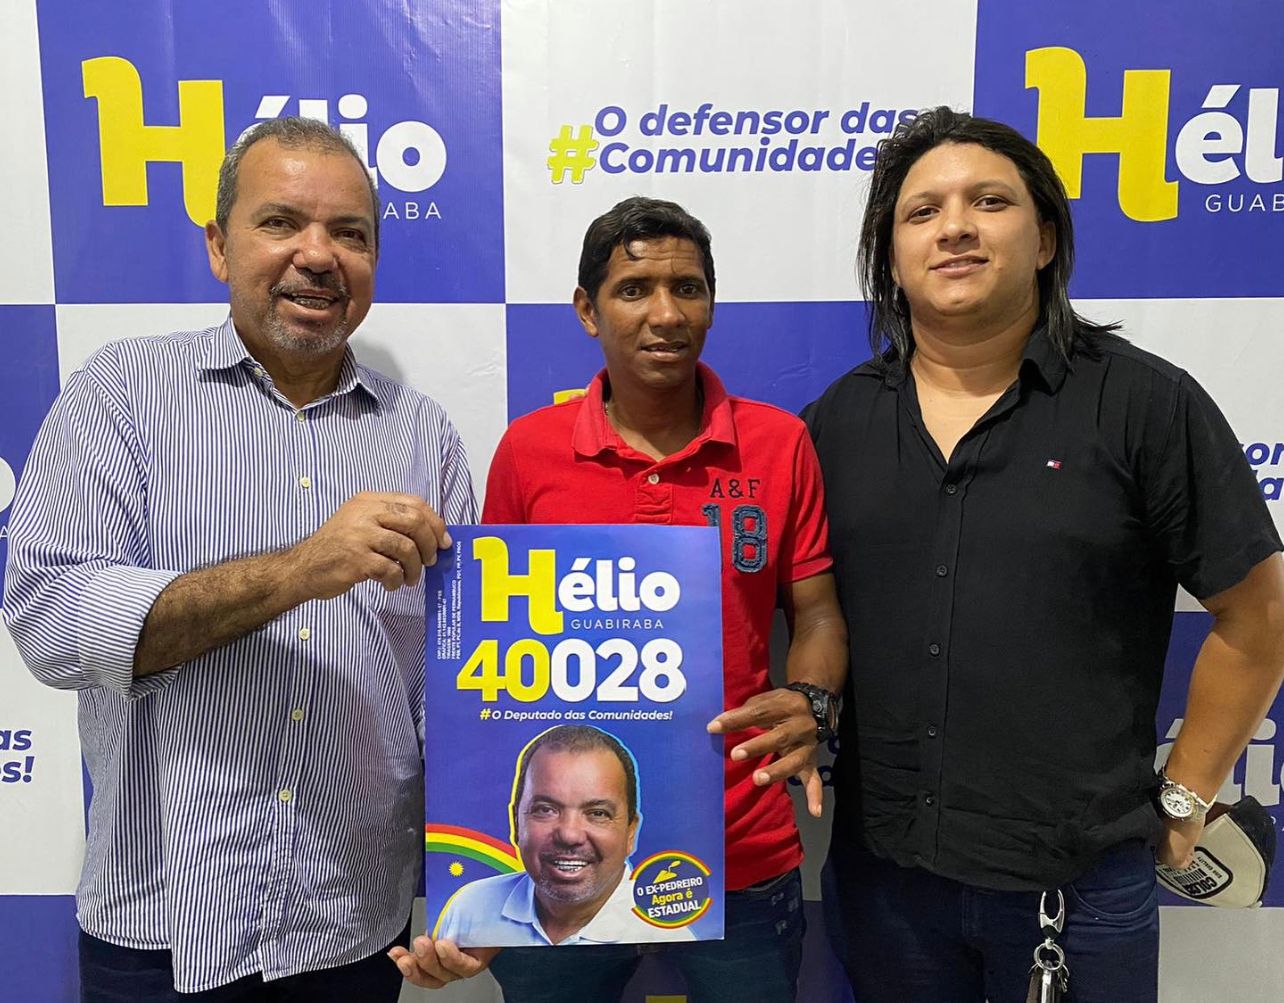 Hélio Guabiraba comemora o ingresso de lideranças de Palmares e Água Preta em seu grupo